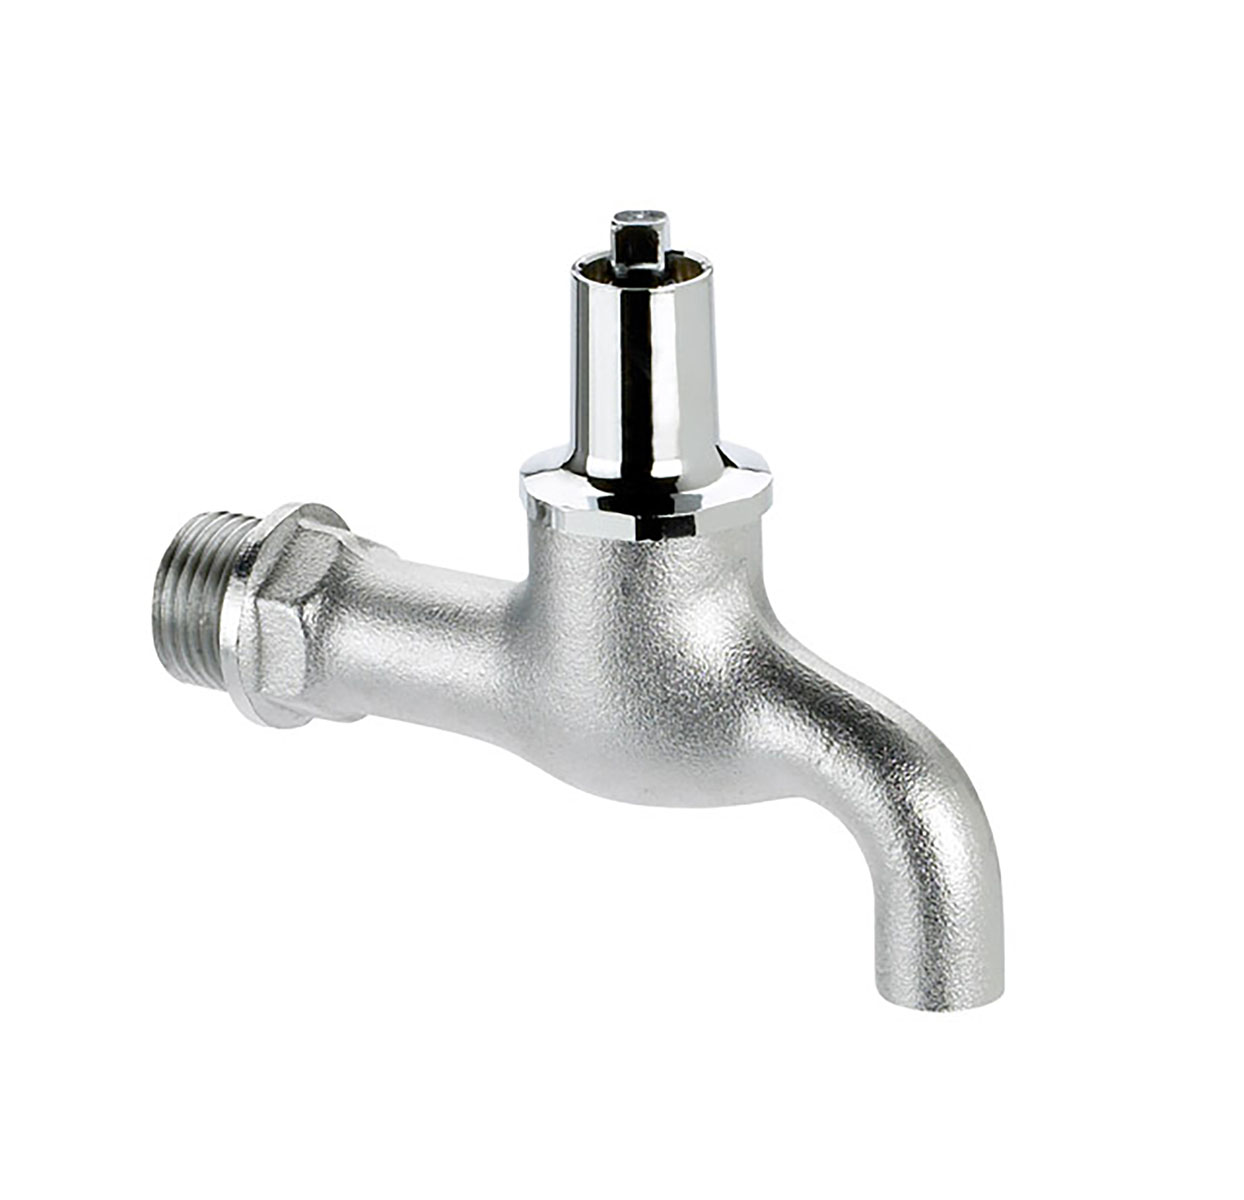 1005200 - CR-Brass draw-off tap - heavy variation socket key upper-part